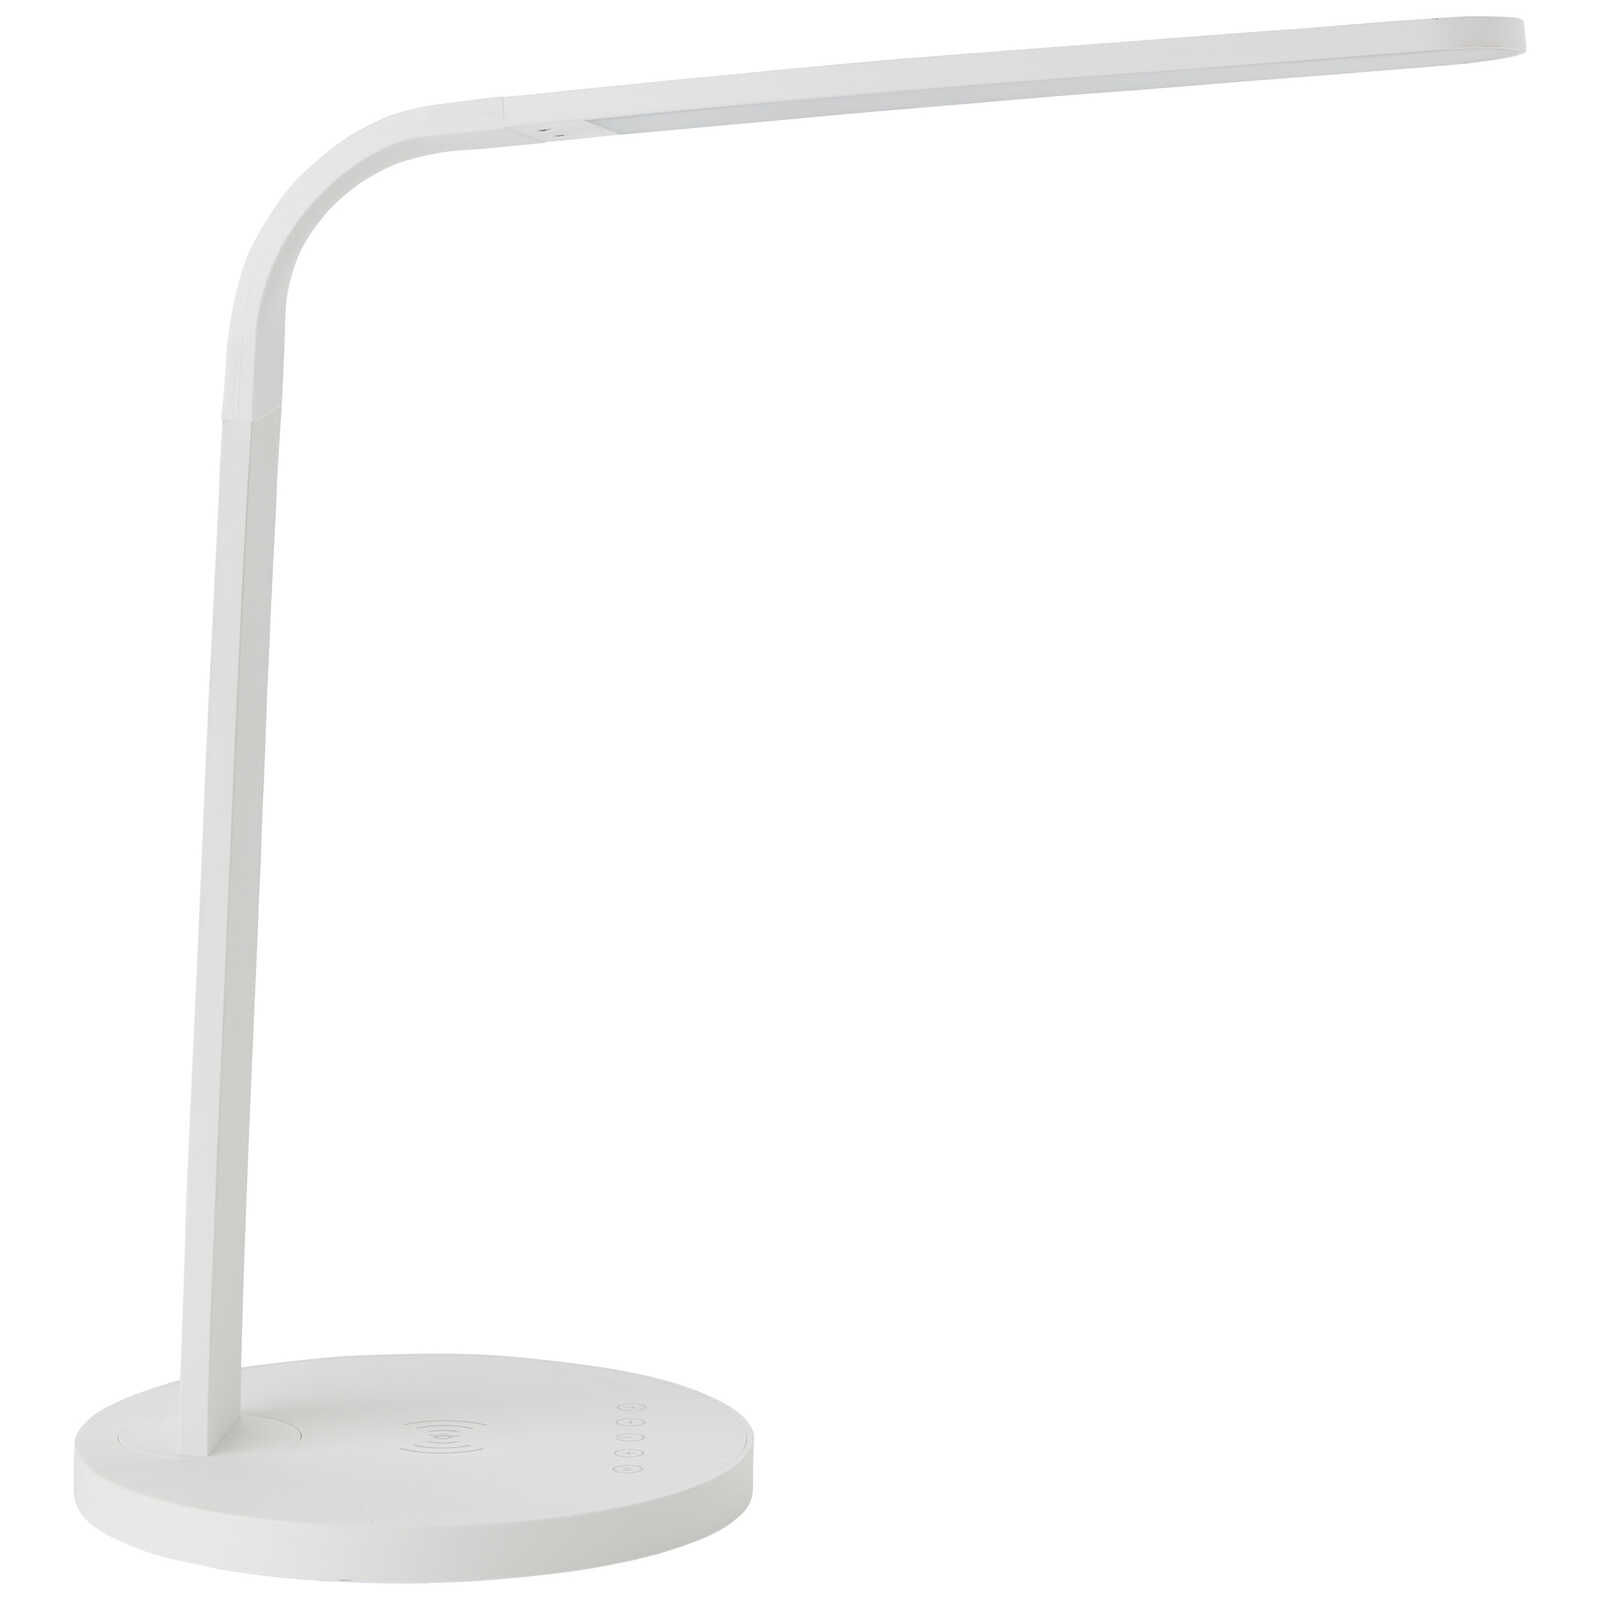             Lampe de table en plastique - Jannes - Blanc
        